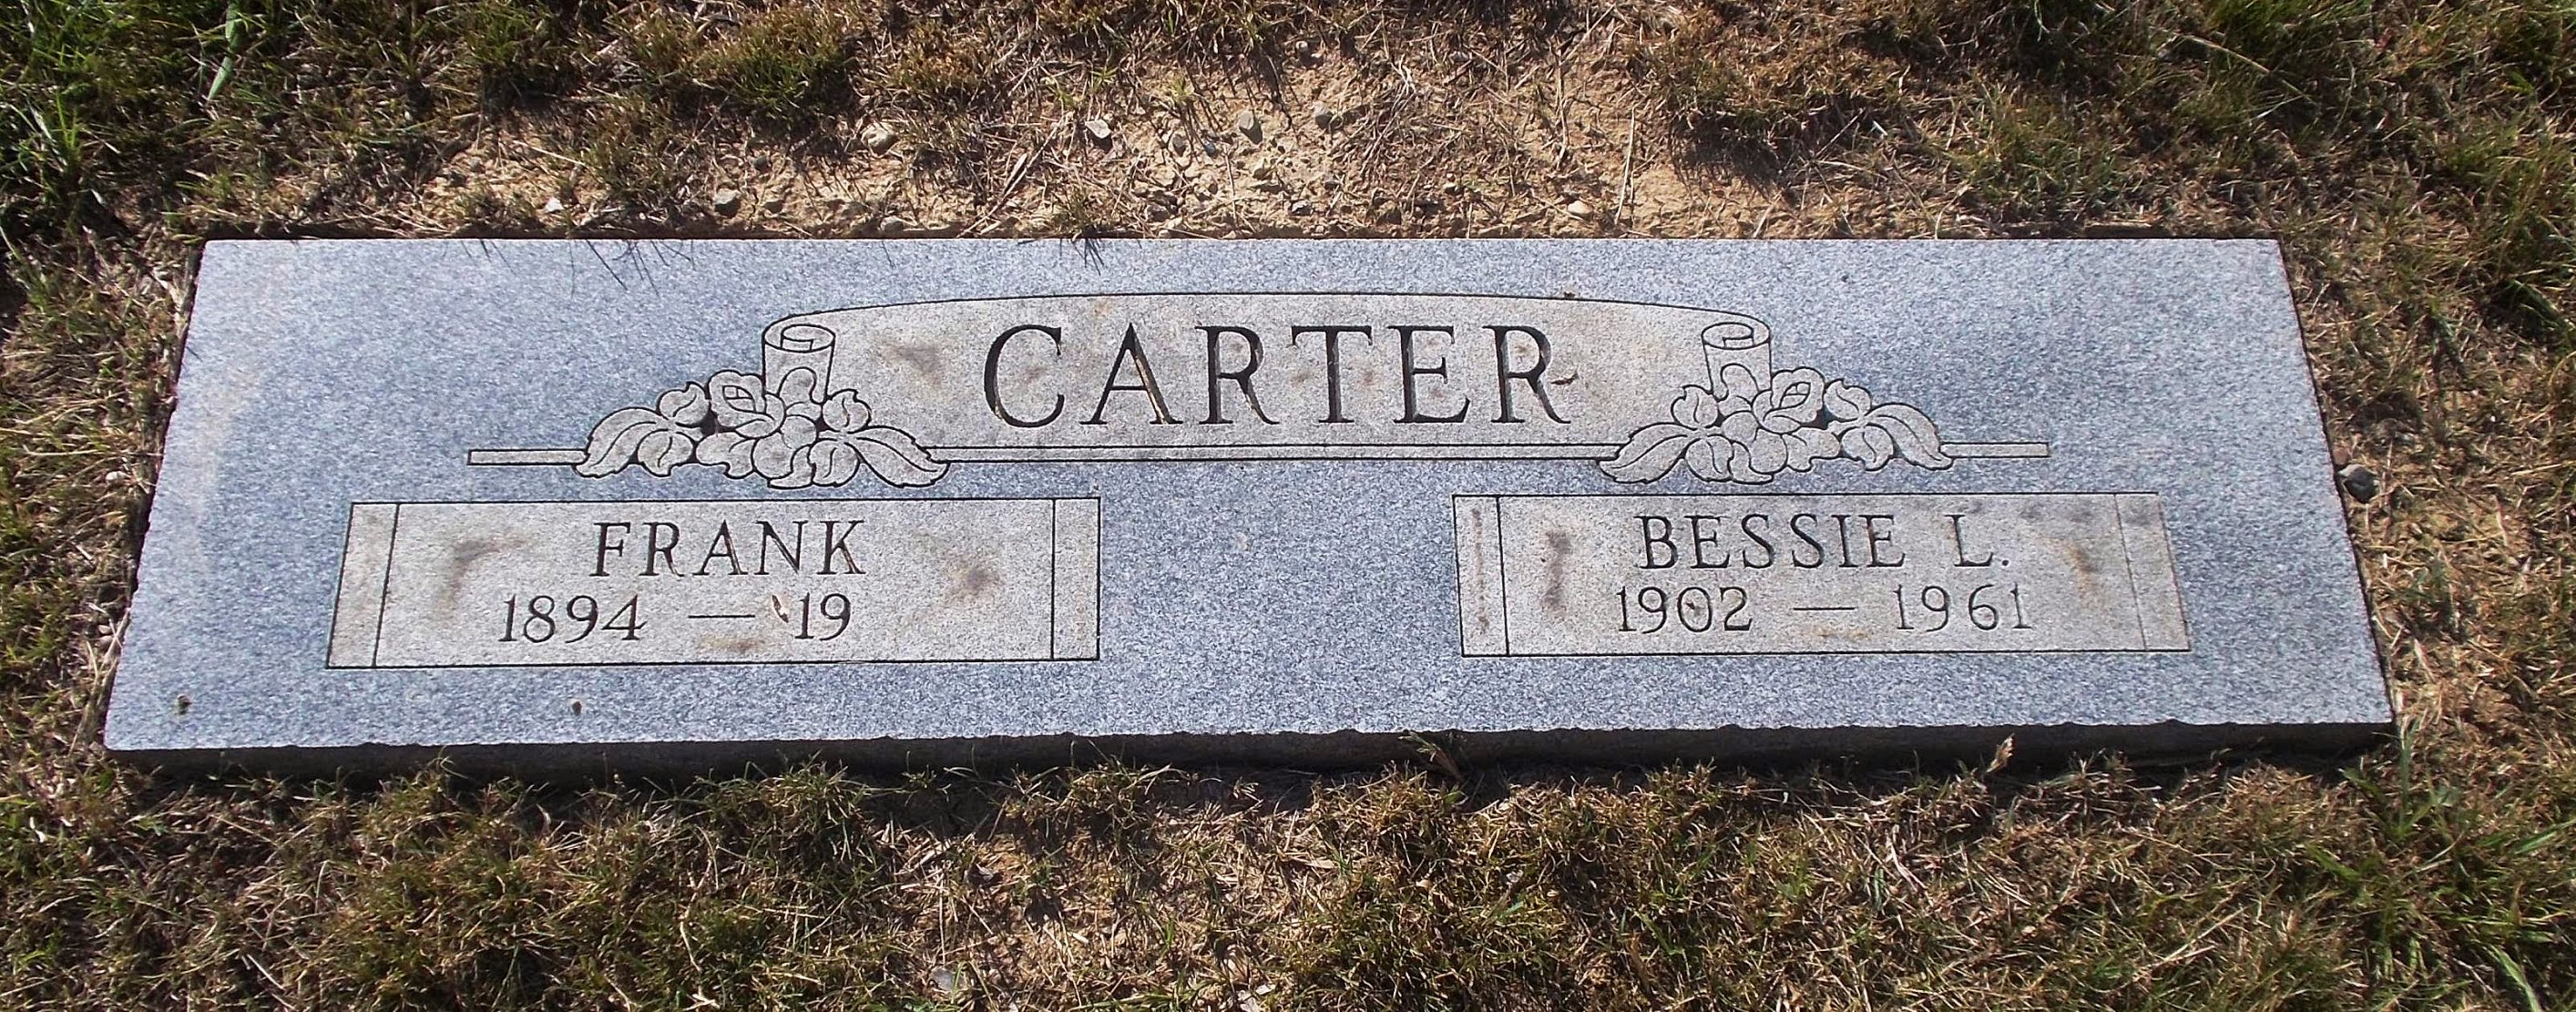 Bessie L Carter